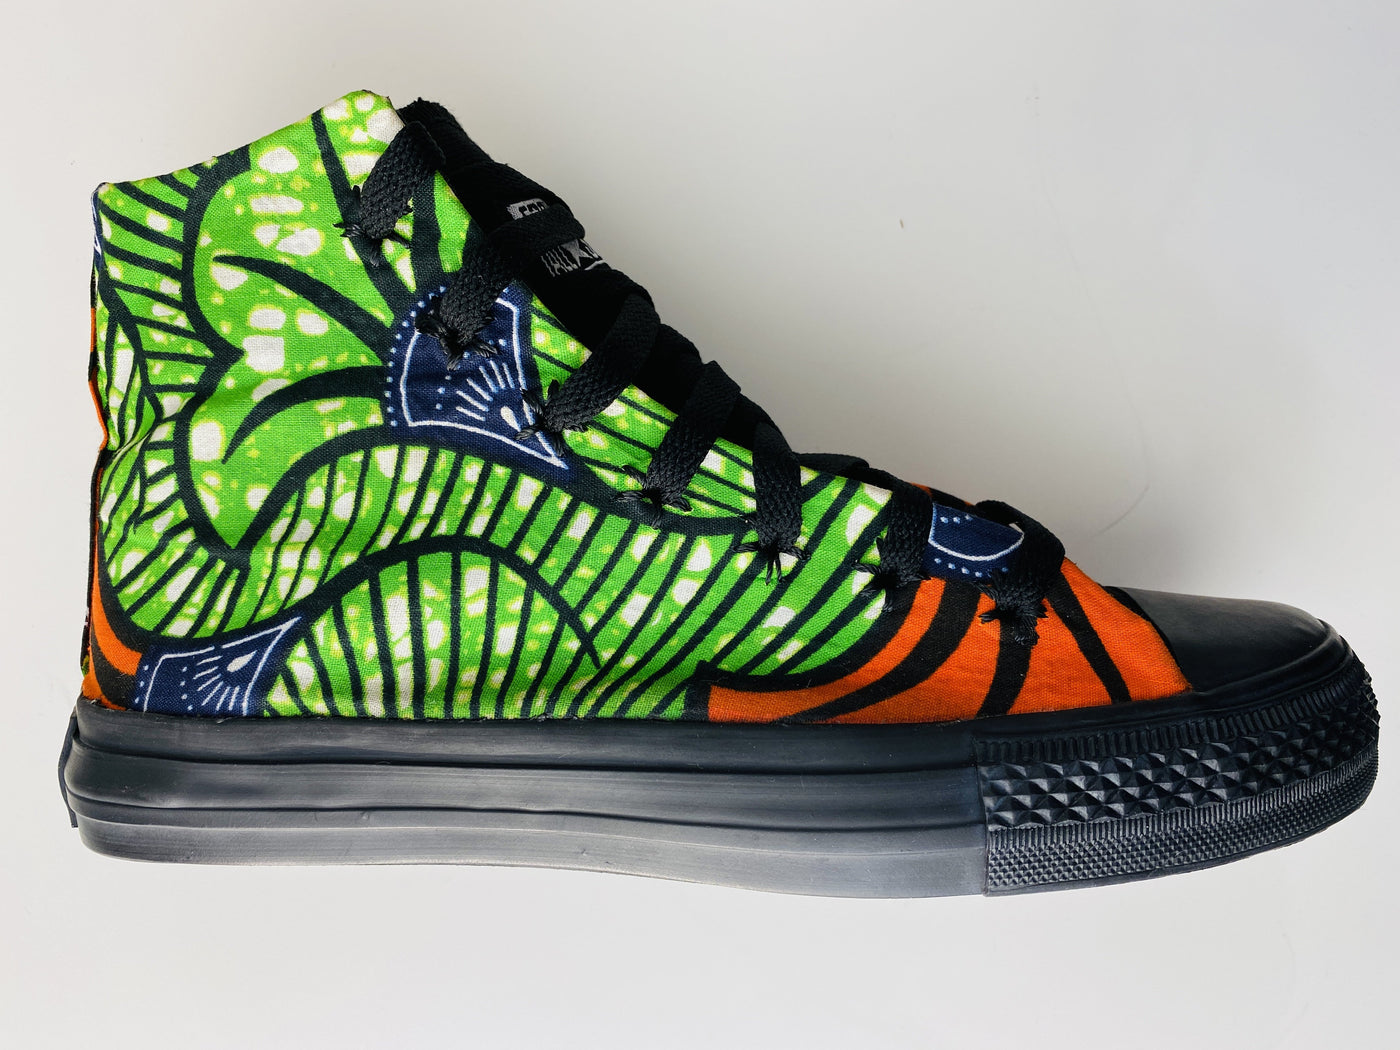 Zapatillas con estampado africano - Flores verdes